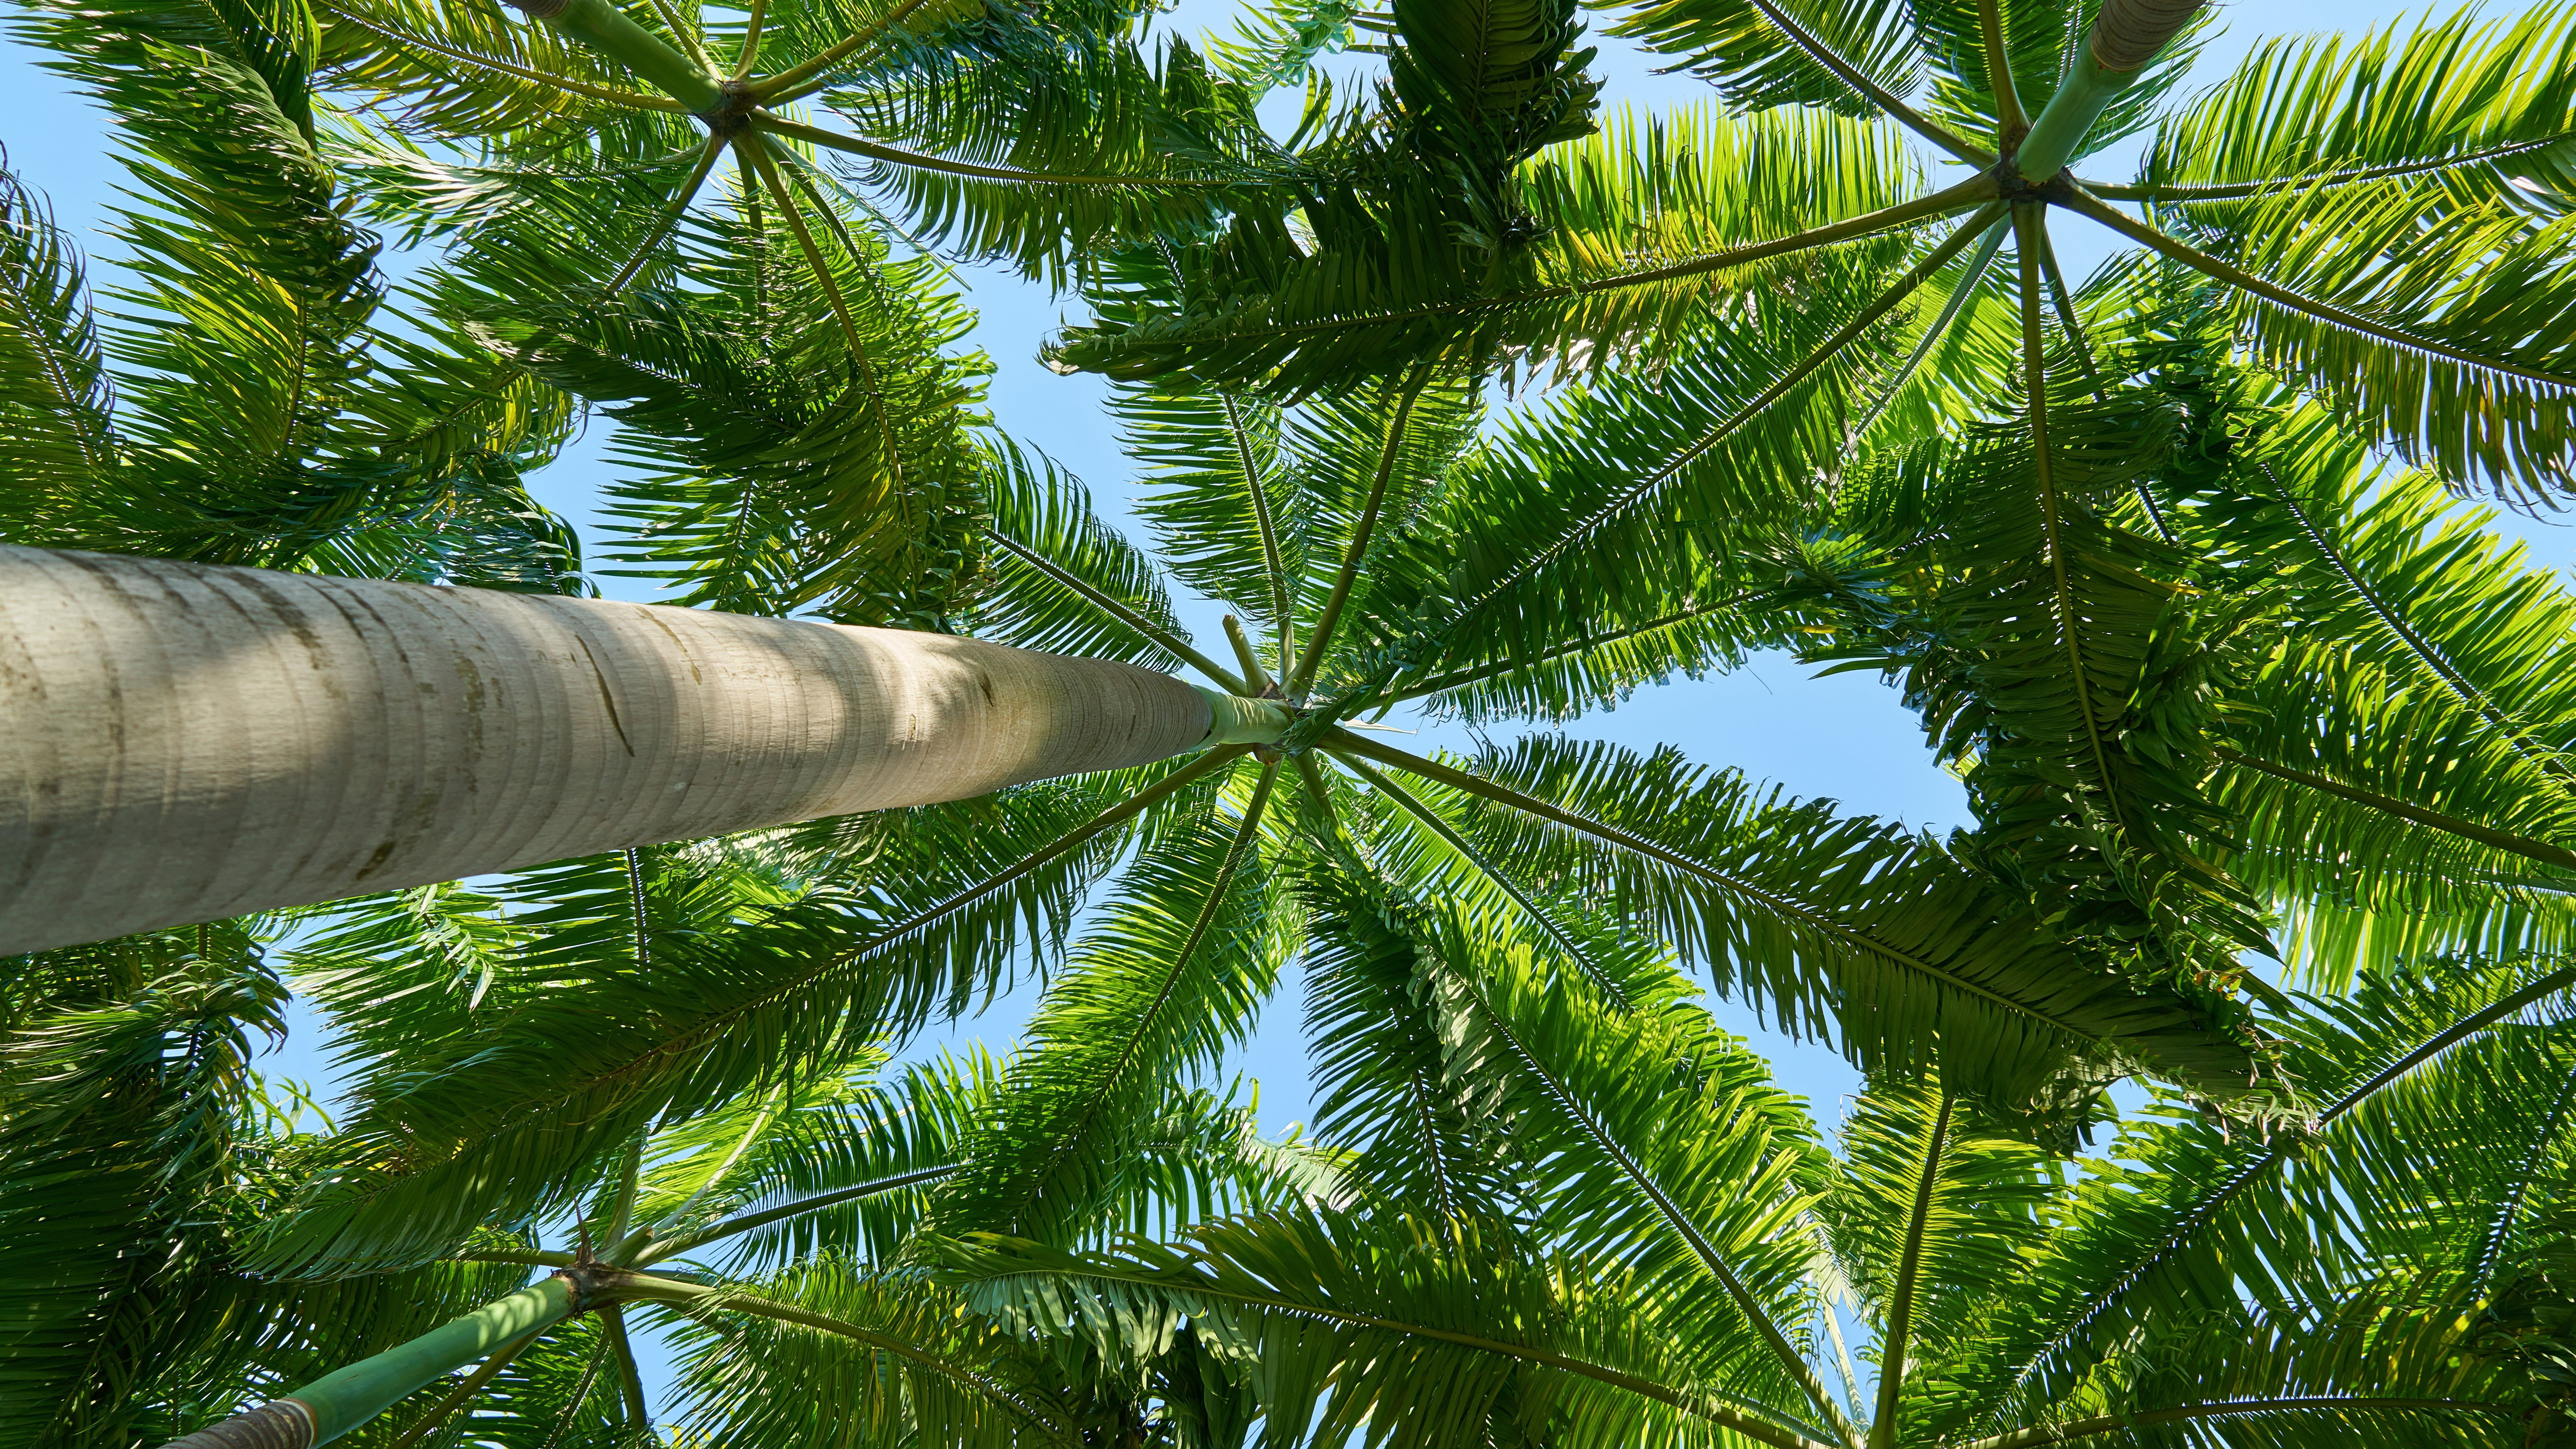 Worm’s Wye View Of Palm Tree K K HD Palm Tree